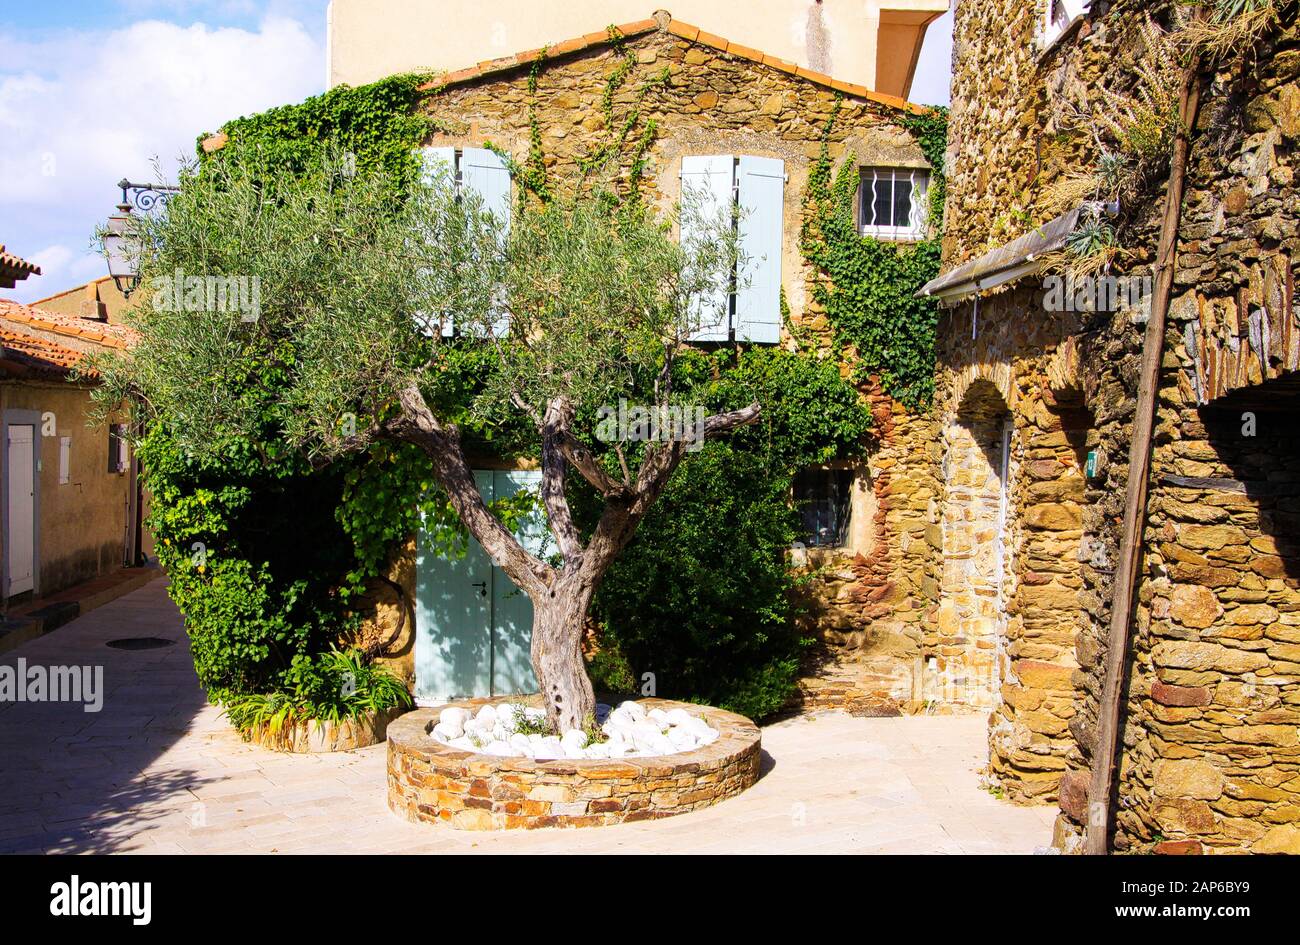 Vue sur la place avec l'olivier vert et la maison en pierre typiquement française de la méditerranée couverte d'ivy en lumière naturelle vive du soleil - Gassin, Côte d'Azur, Banque D'Images